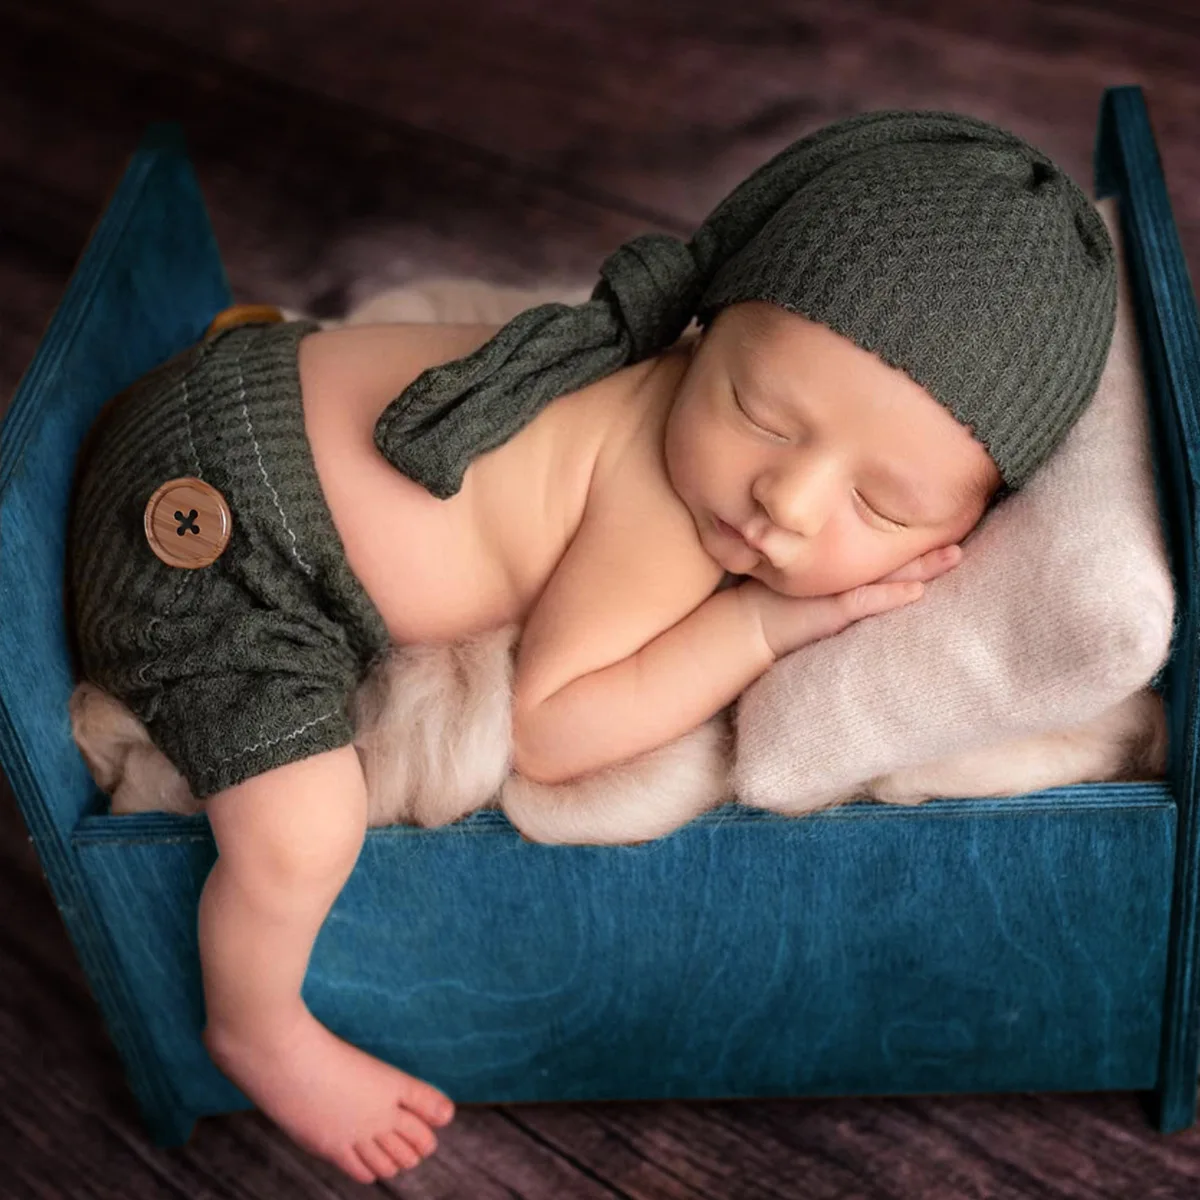 الوليد التصوير الدعائم بيبي بوي فتاة الزي رومبير قبعة بذلة الرضع صور اطلاق النار التصوير الملابس